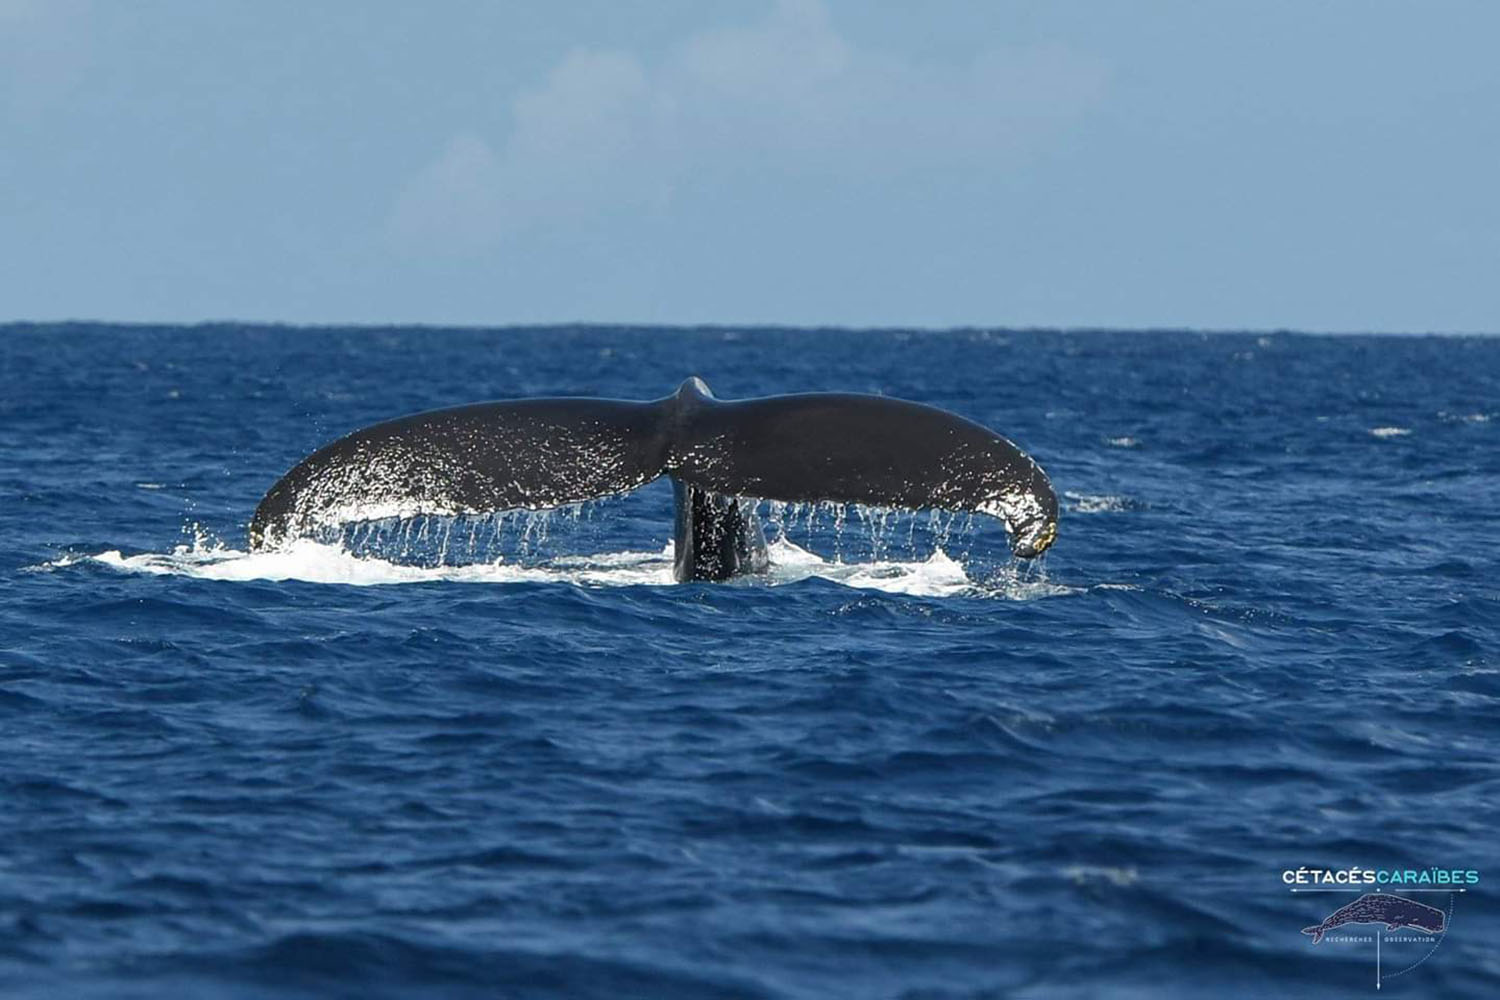 Cétacés et faune marine de Guadeloupe, voyage scientifique. Baleine à bosse © Cédric Millon